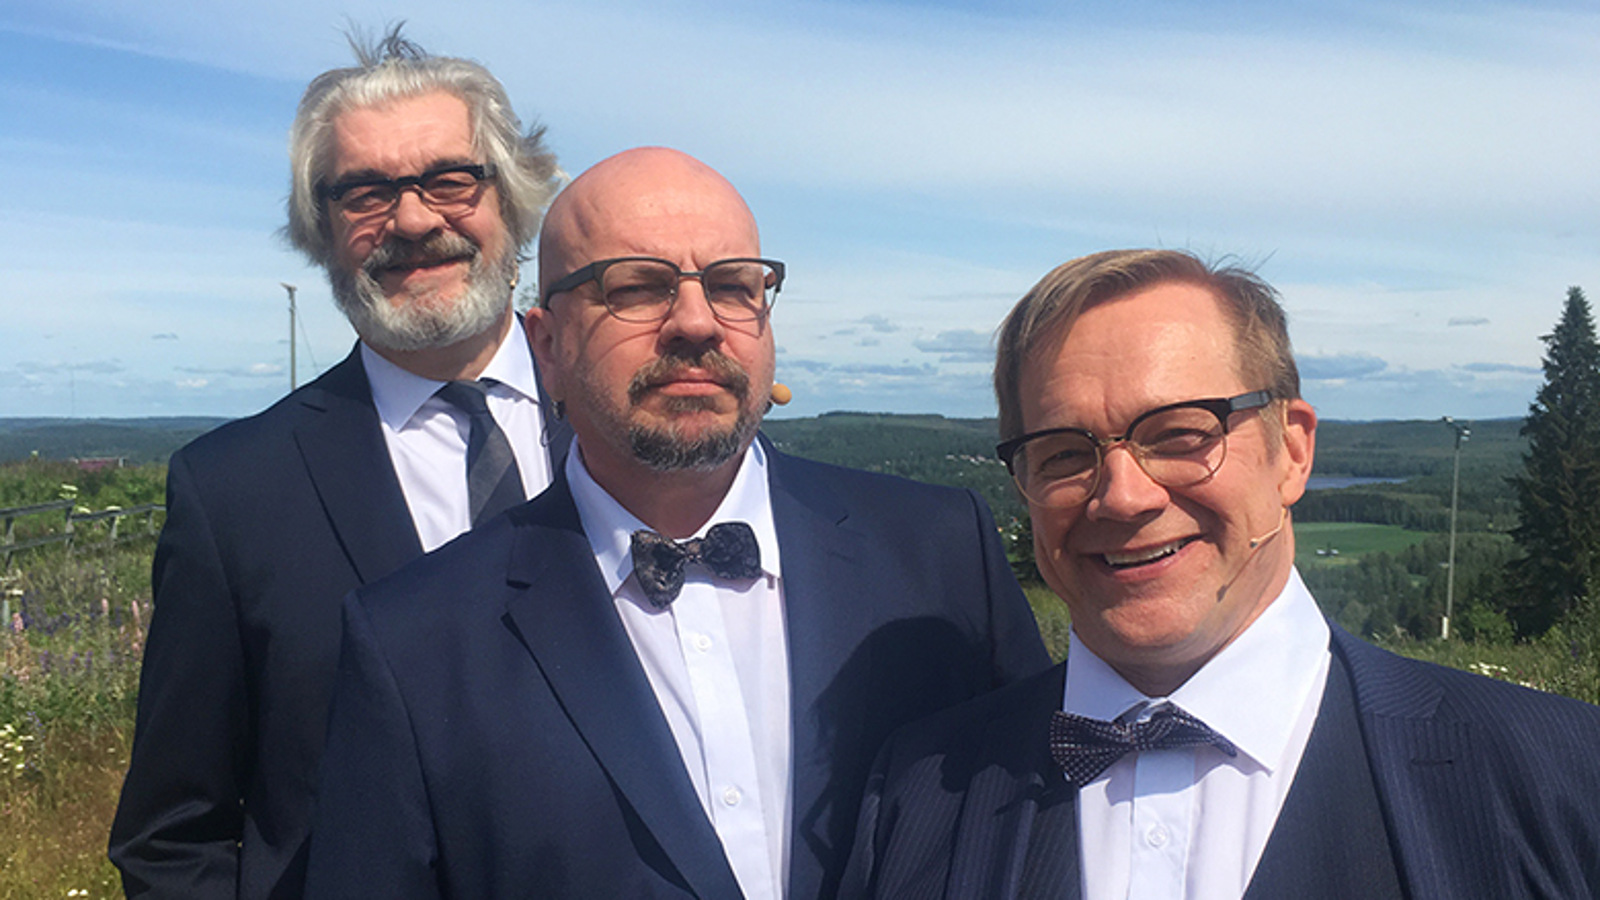 Kuvassa ovat Jussi Lampi, Timo Rautiainen ja Puntti Valtonen puolivartalokuvassa ja limittäin rinteessä.  Heillä on tummat puvuntakit päällä ja valkoiset paidat sekä tummat solmiot.  Keskellä olevalla Timo Rautiaisella on rusetti.  Taustalla on sininen, kirkas taivas.